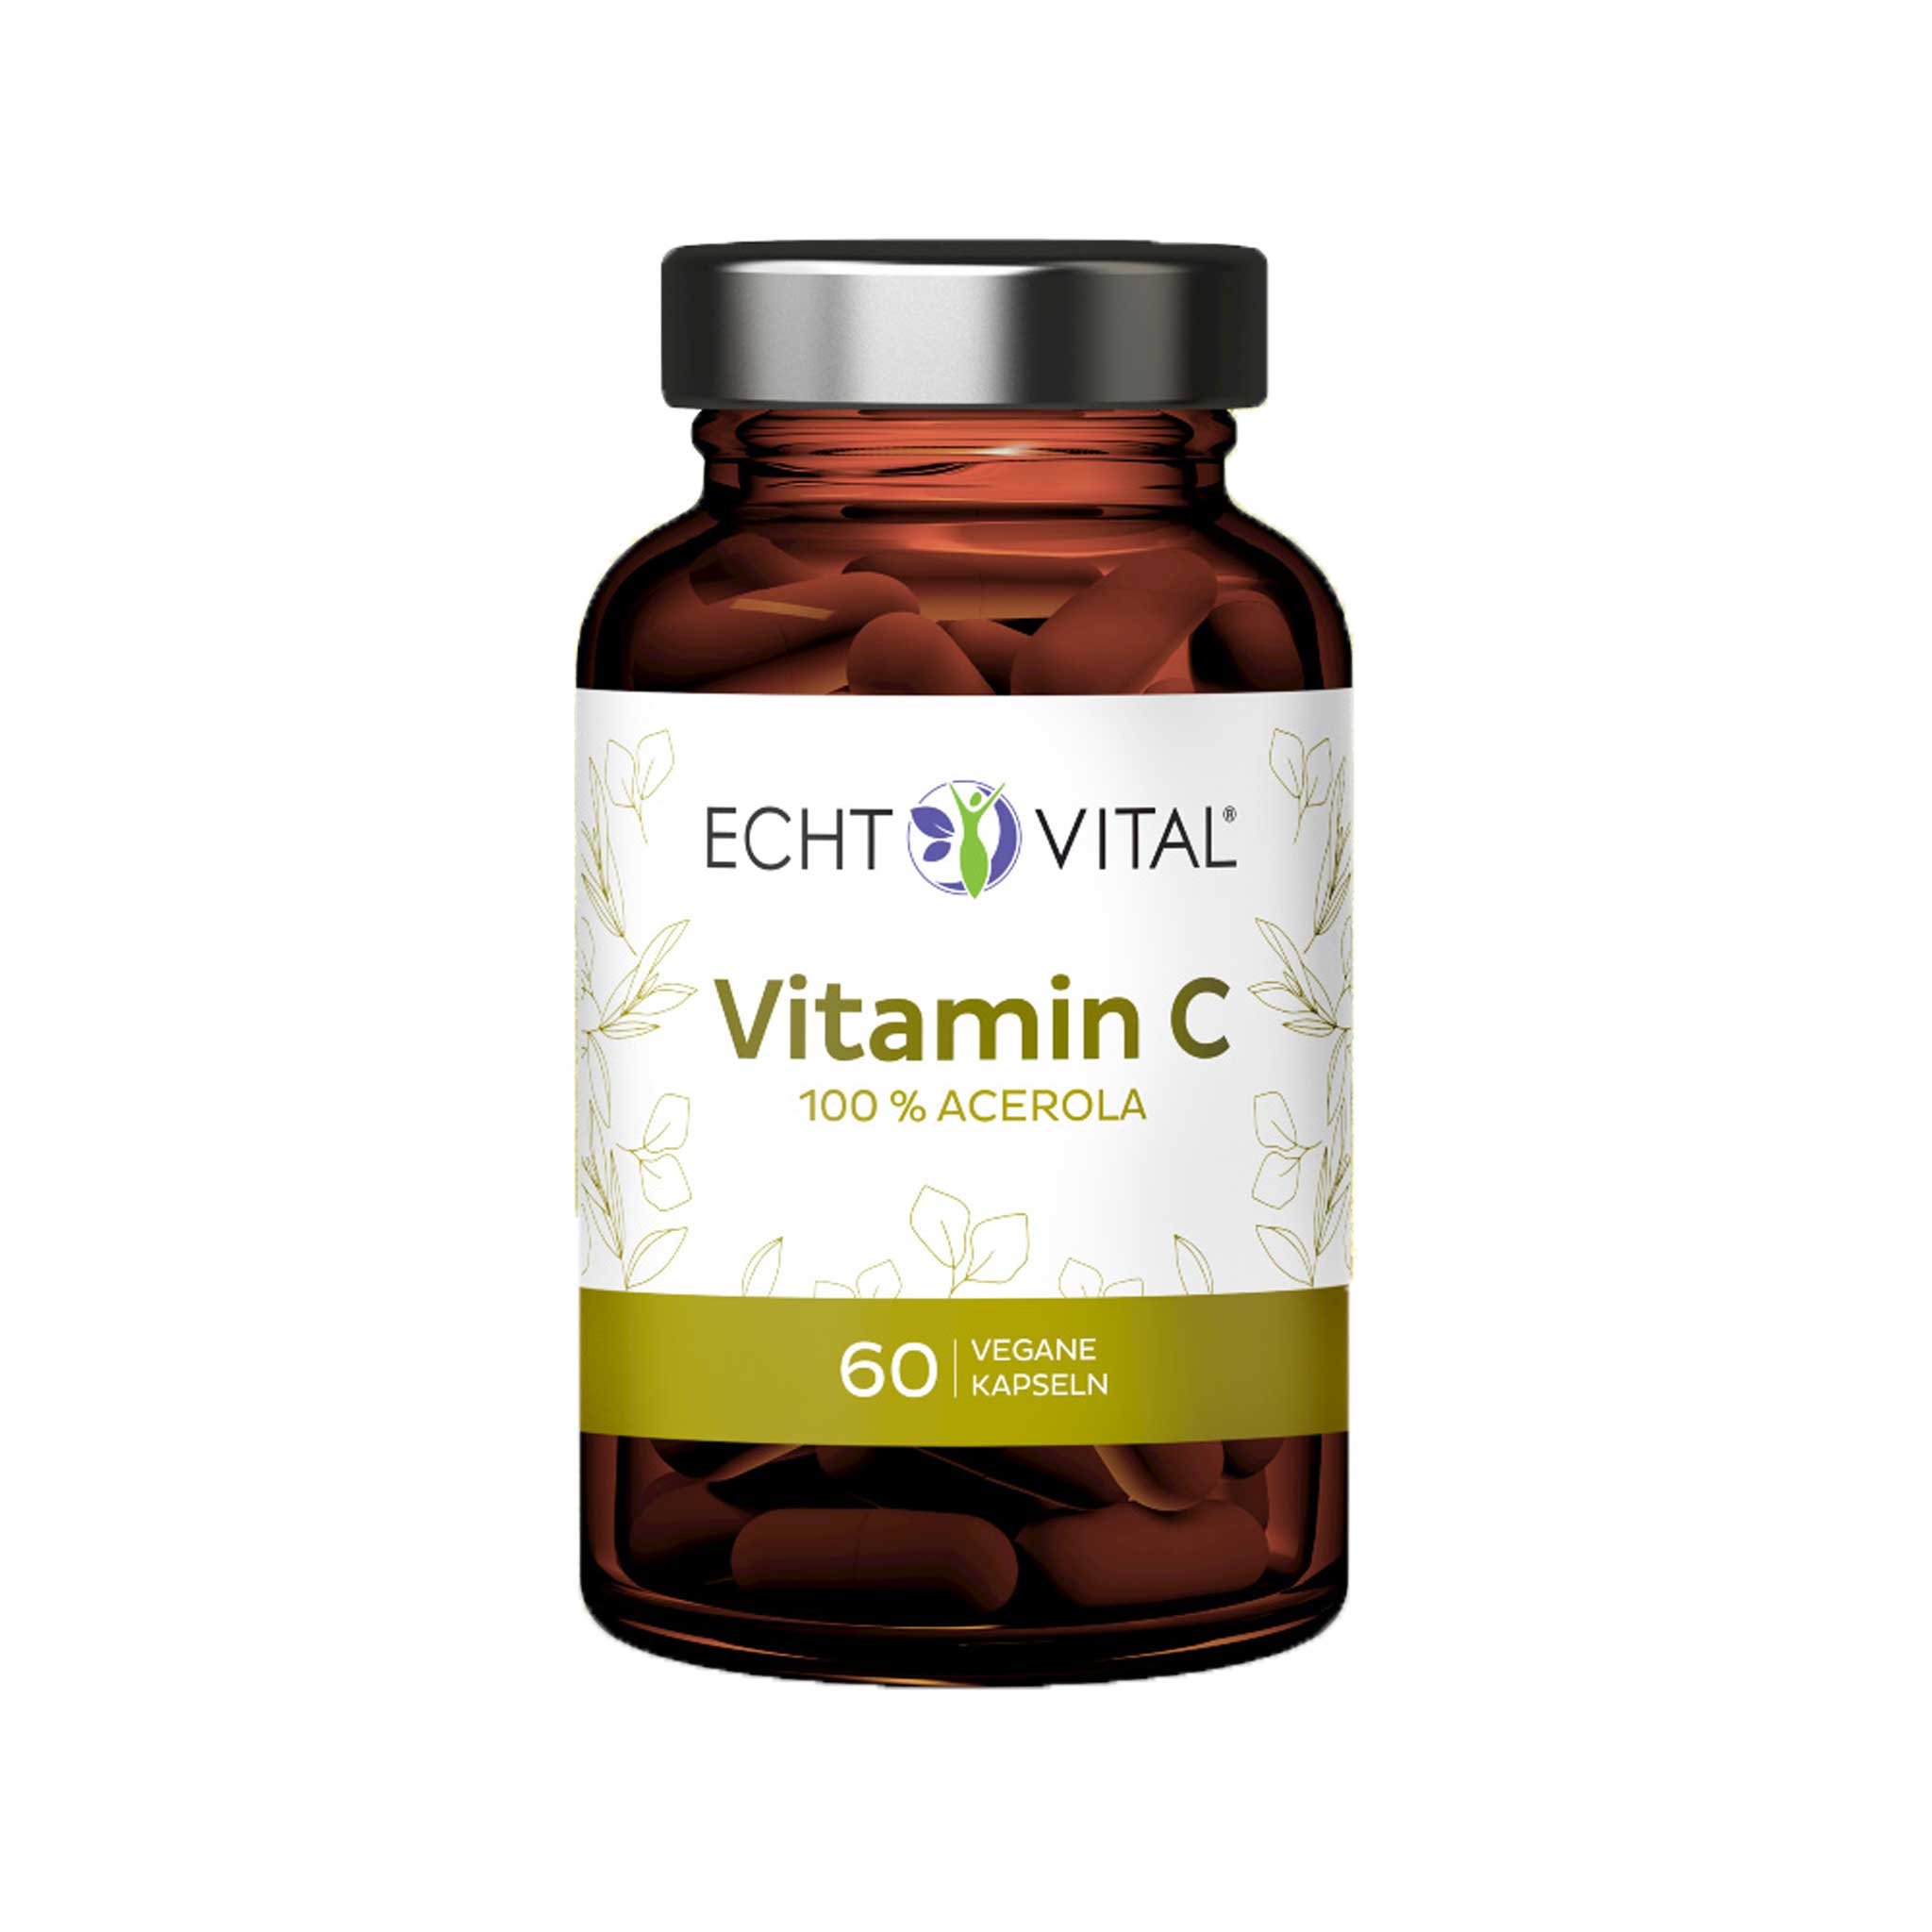 Vitamin C aus Acerola von Echt Vital beinhaltet 60 vegane Kapseln